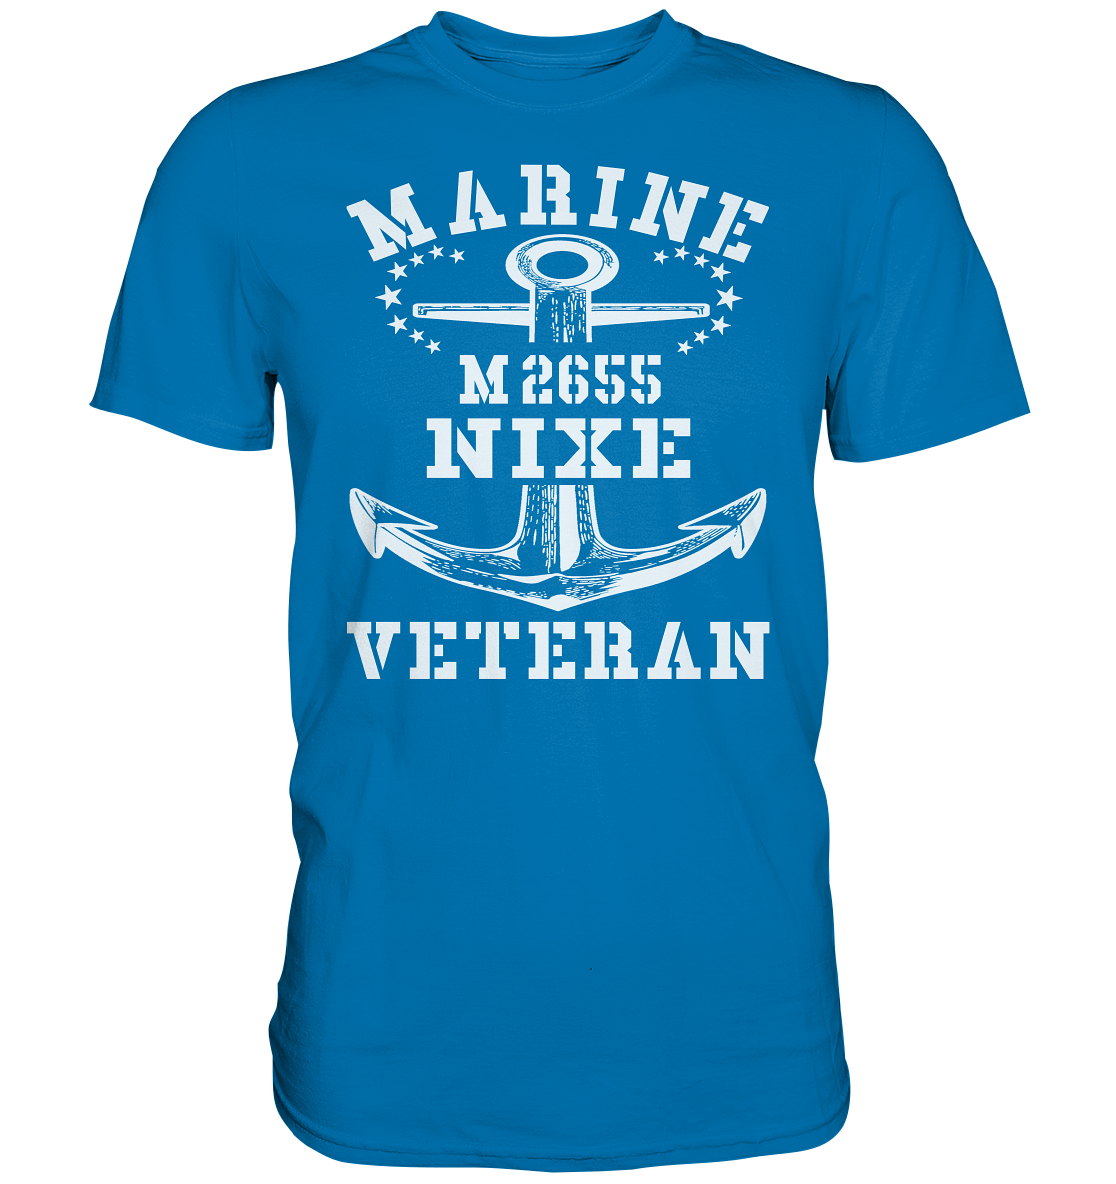 BiMi M2655 NIXE Marine Veteran - Premium Shirt